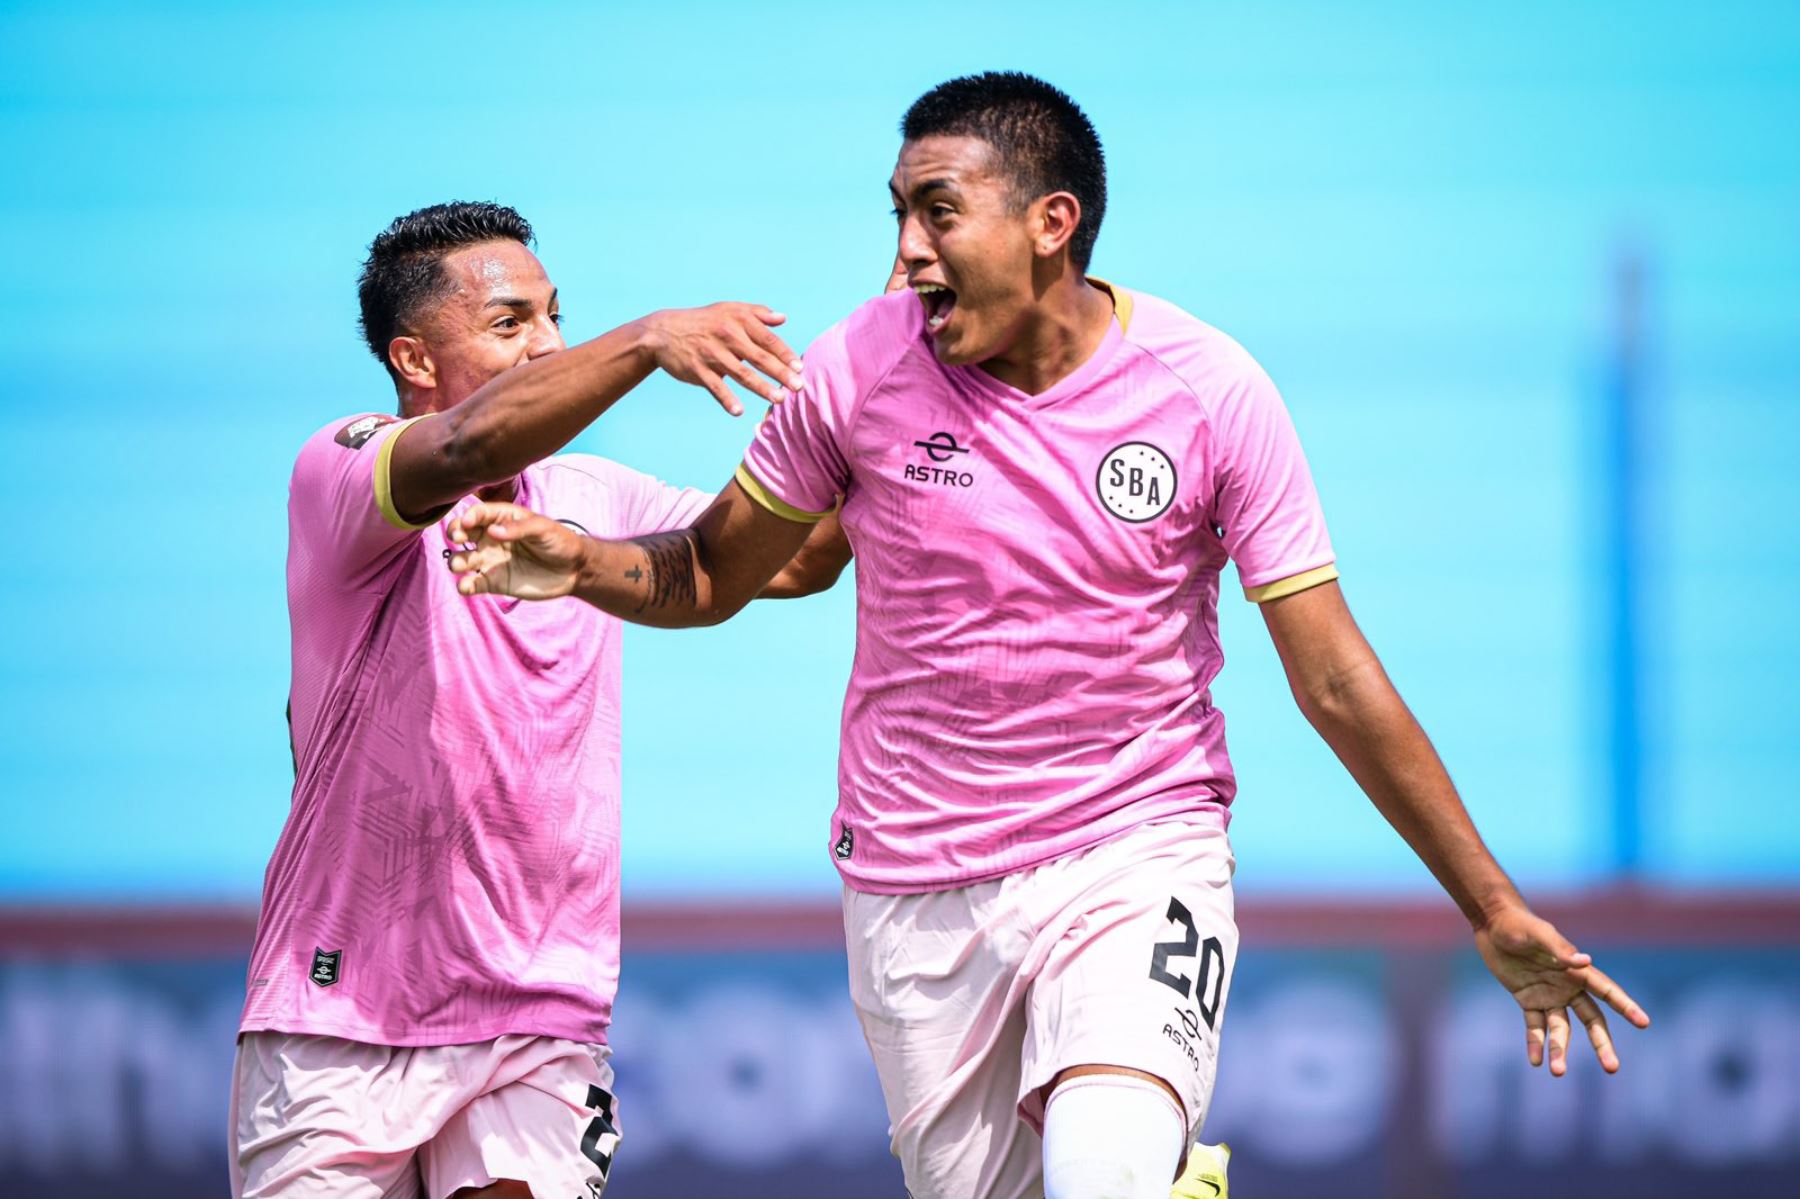 El equipo rosado remontó el partido y logró vencer 2-1 al Unión Comercio en el estadio Alberto Gallardo, por la jornada 3 de la Liga 1 de Fútbol Profesional.

Foto: Liga1